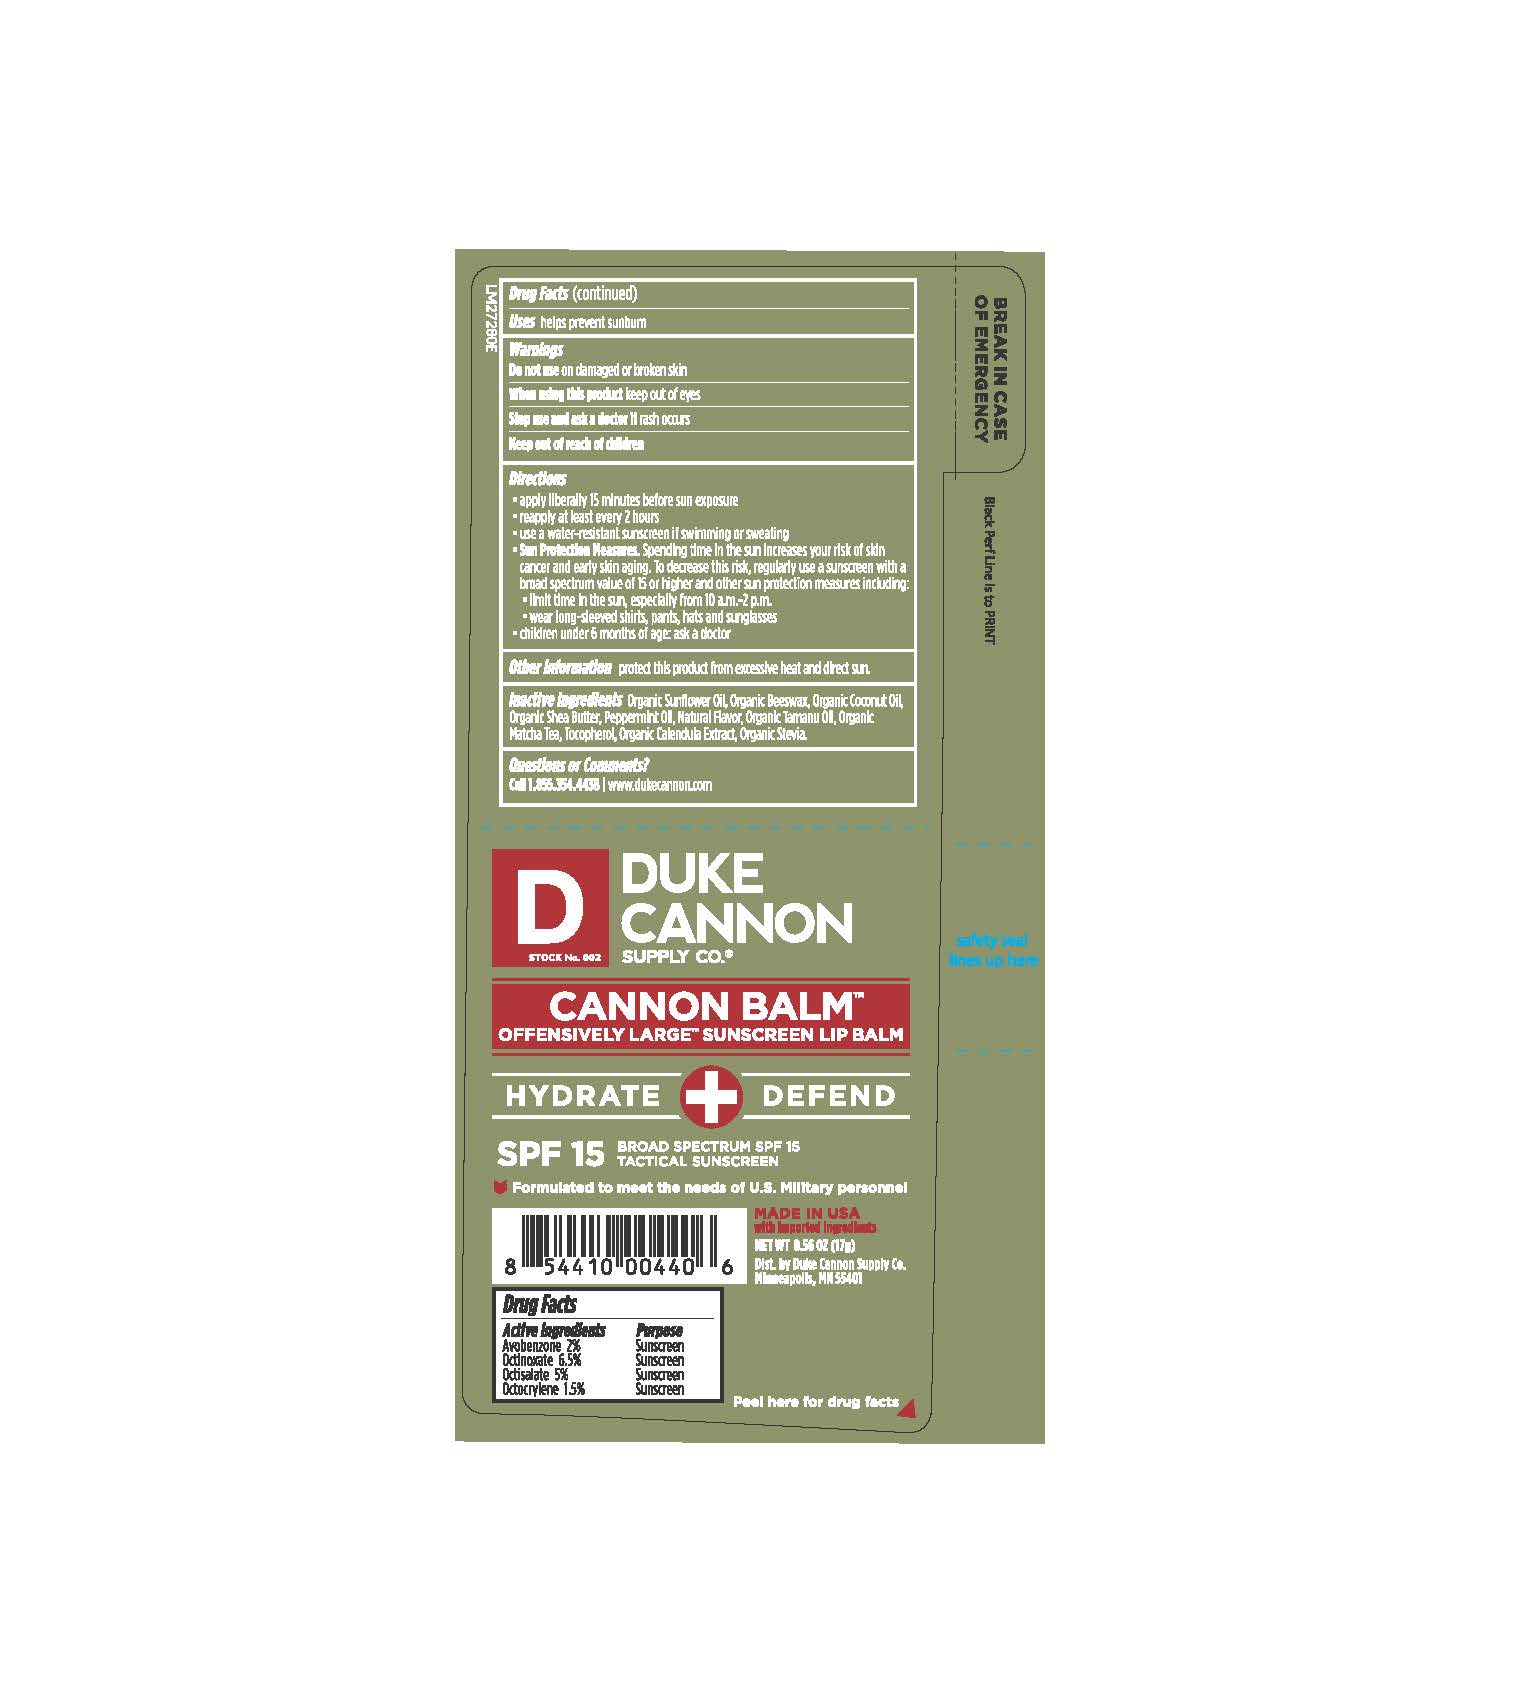 Duke Cannon CannonBalm SPF 15 0.56 oz (17g) Tube Label